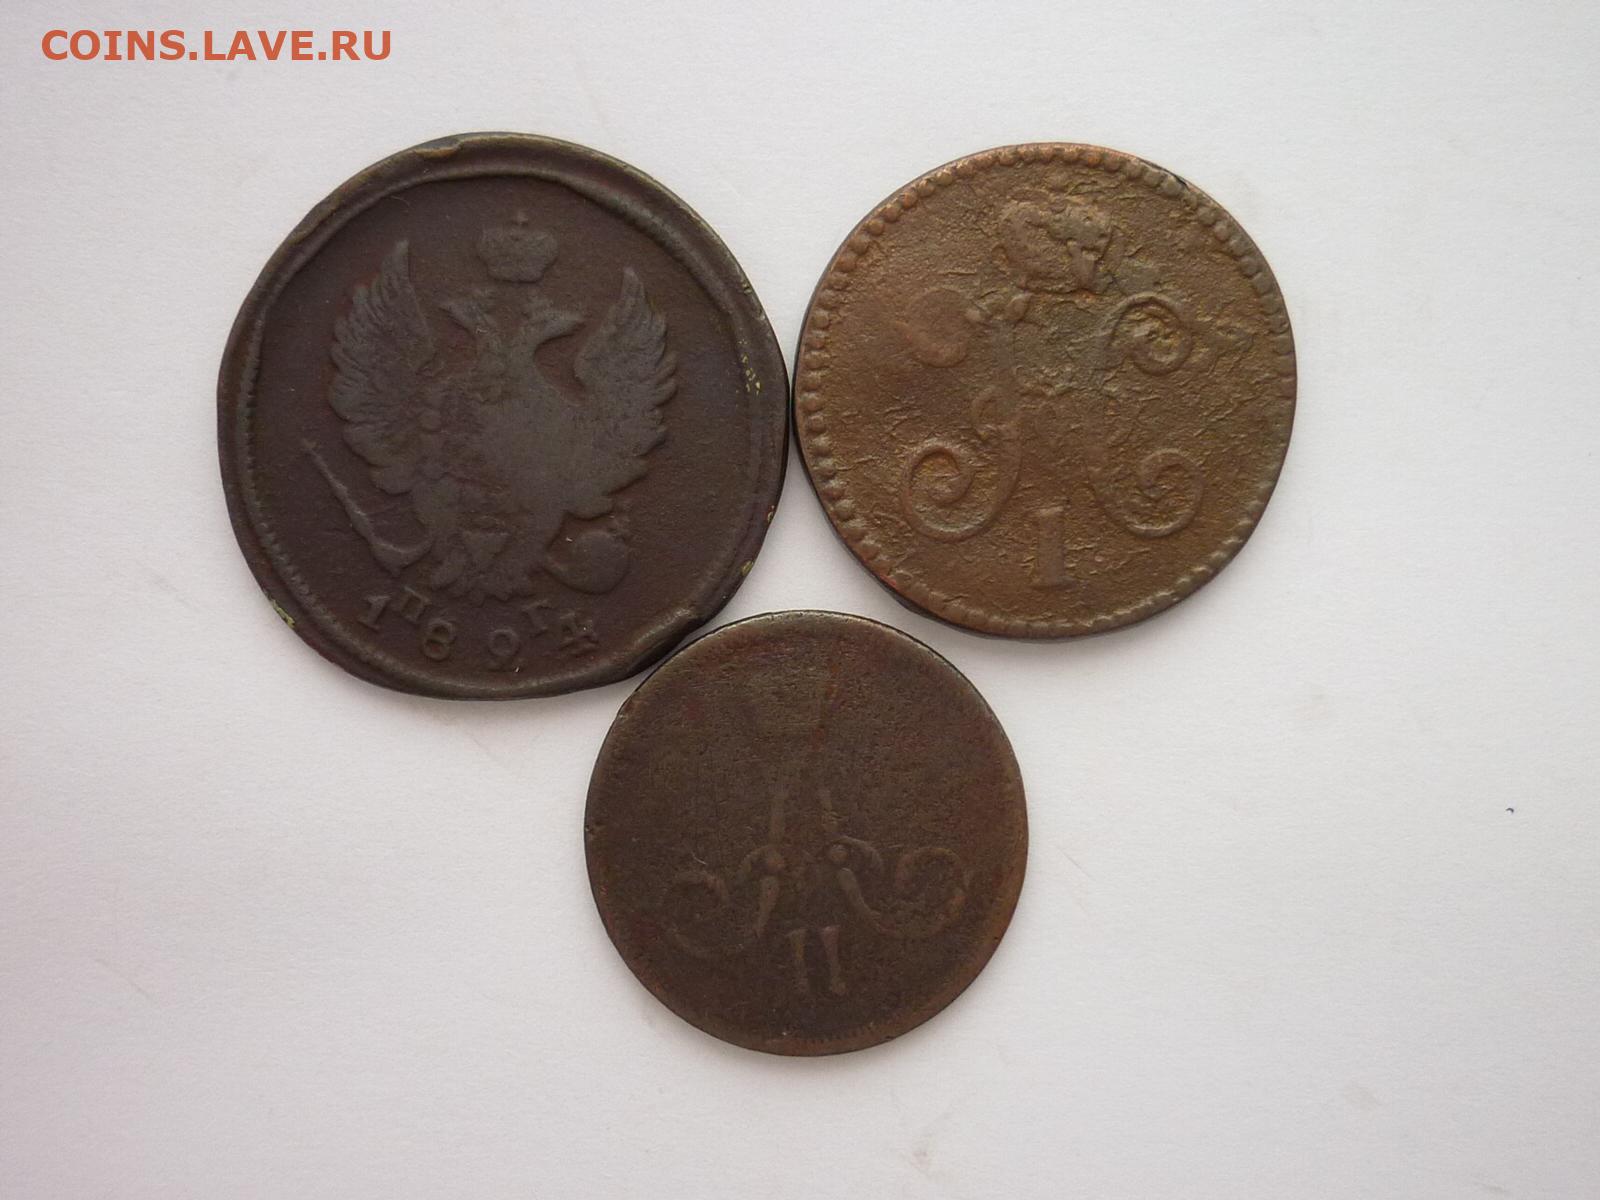 На столе лежат 3 монеты в сумме 3